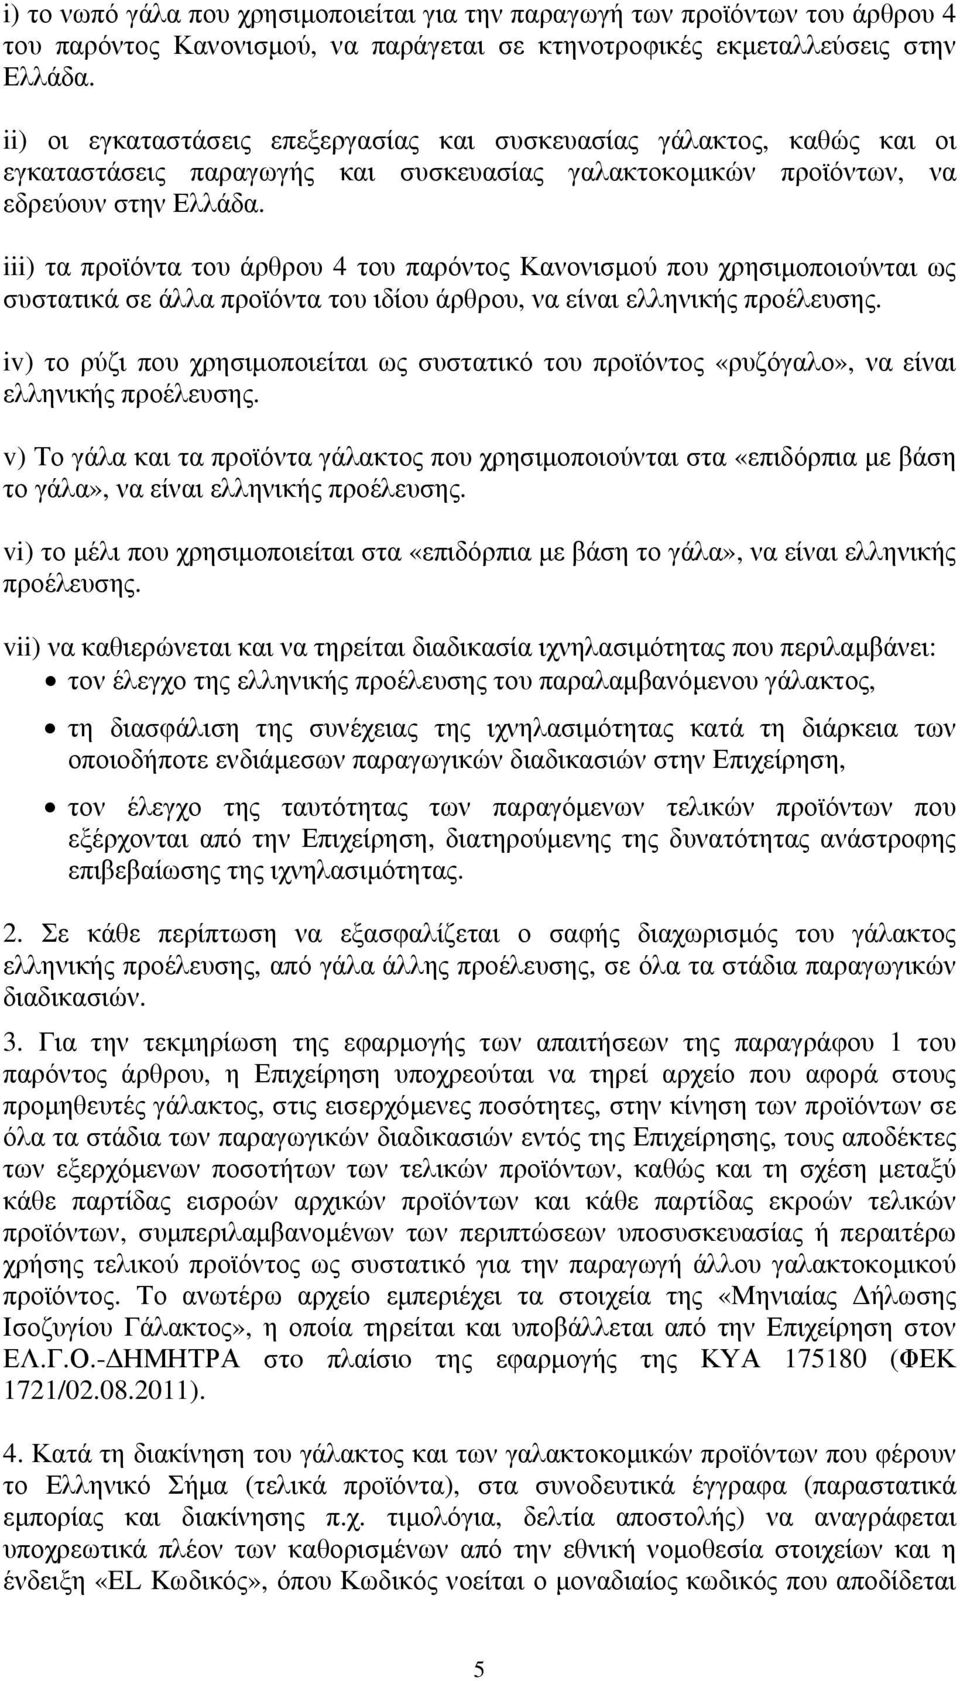 iii) τα προϊόντα του άρθρου 4 του παρόντος Κανονισμού που χρησιμοποιούνται ως συστατικά σε άλλα προϊόντα του ιδίου άρθρου, να είναι ελληνικής προέλευσης.